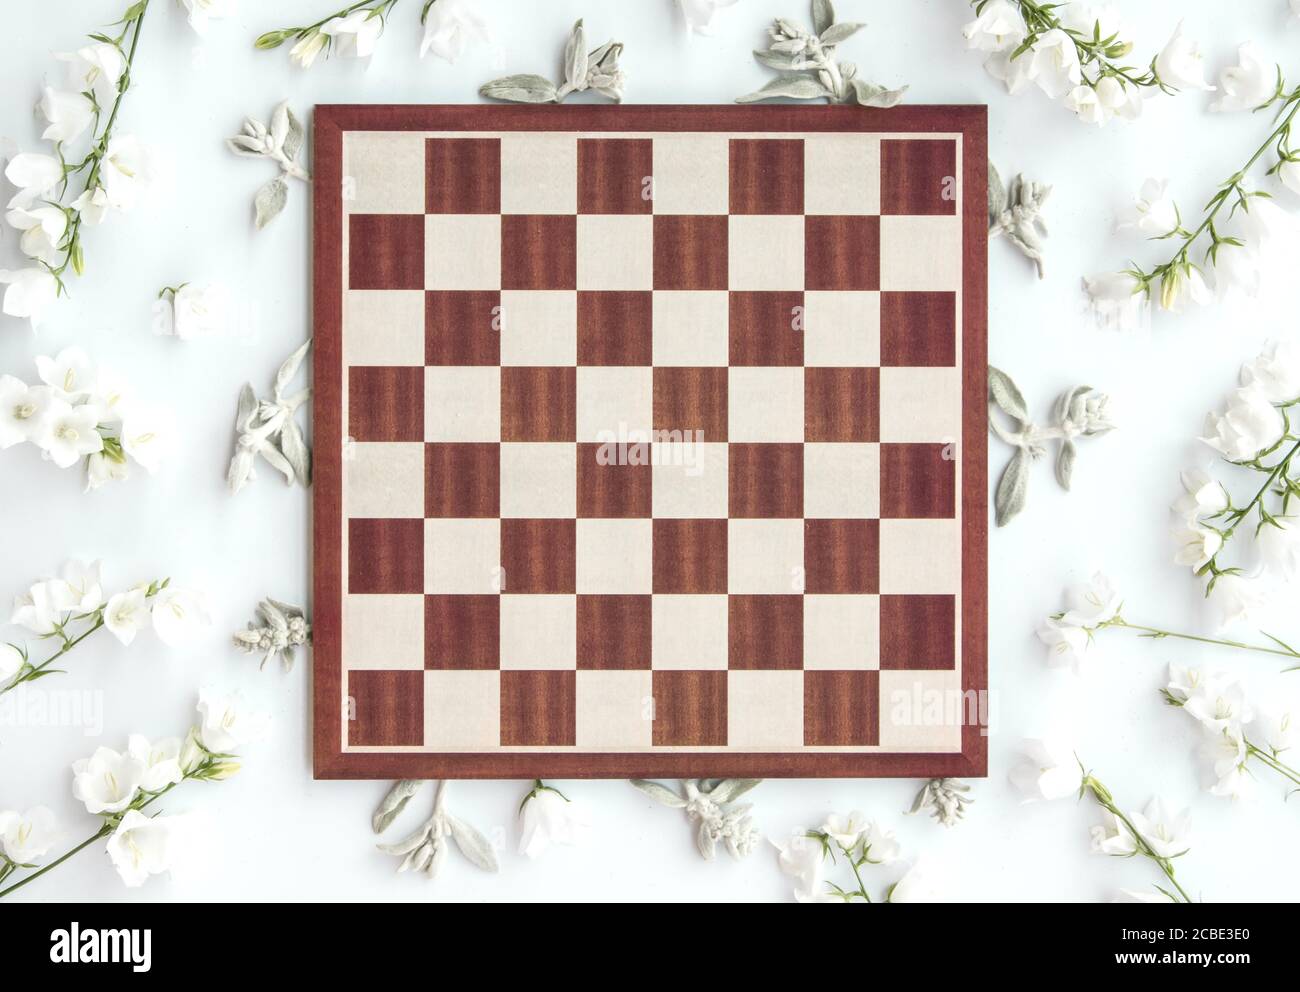 Jeu d'échecs vide, plan d'image stylisé, vue de dessus, fin de la partie Banque D'Images